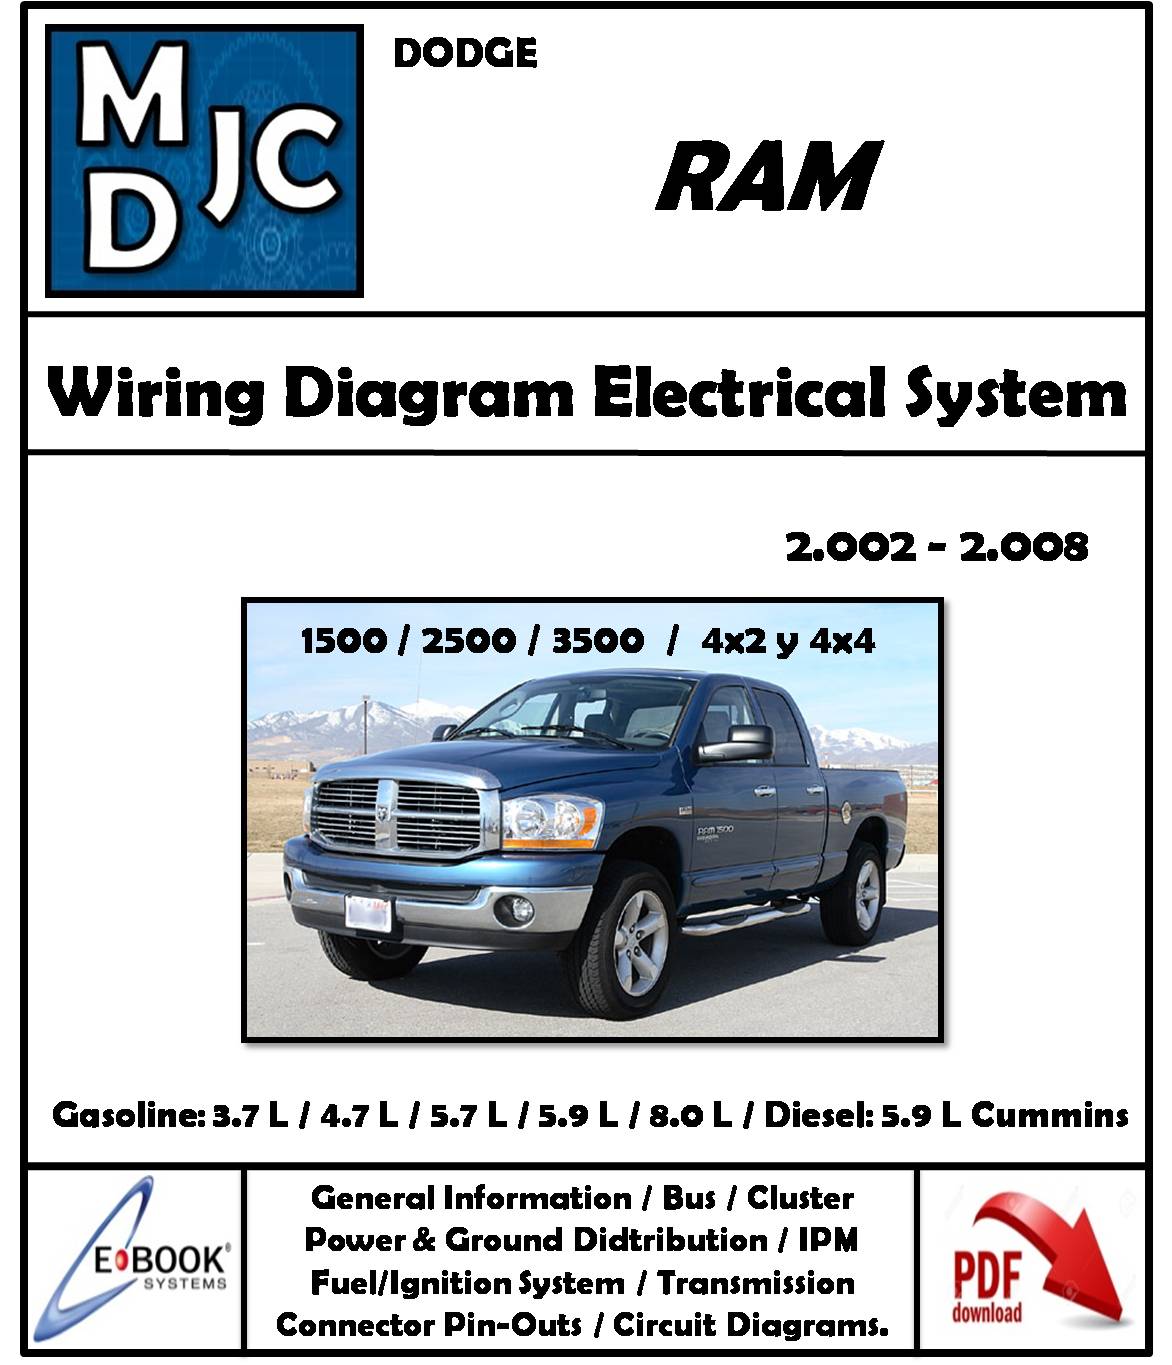 Diagramas de Cableado Sistema Eléctrico Dodge RAM 1500 - 2500 - 3500 / 2002-2008